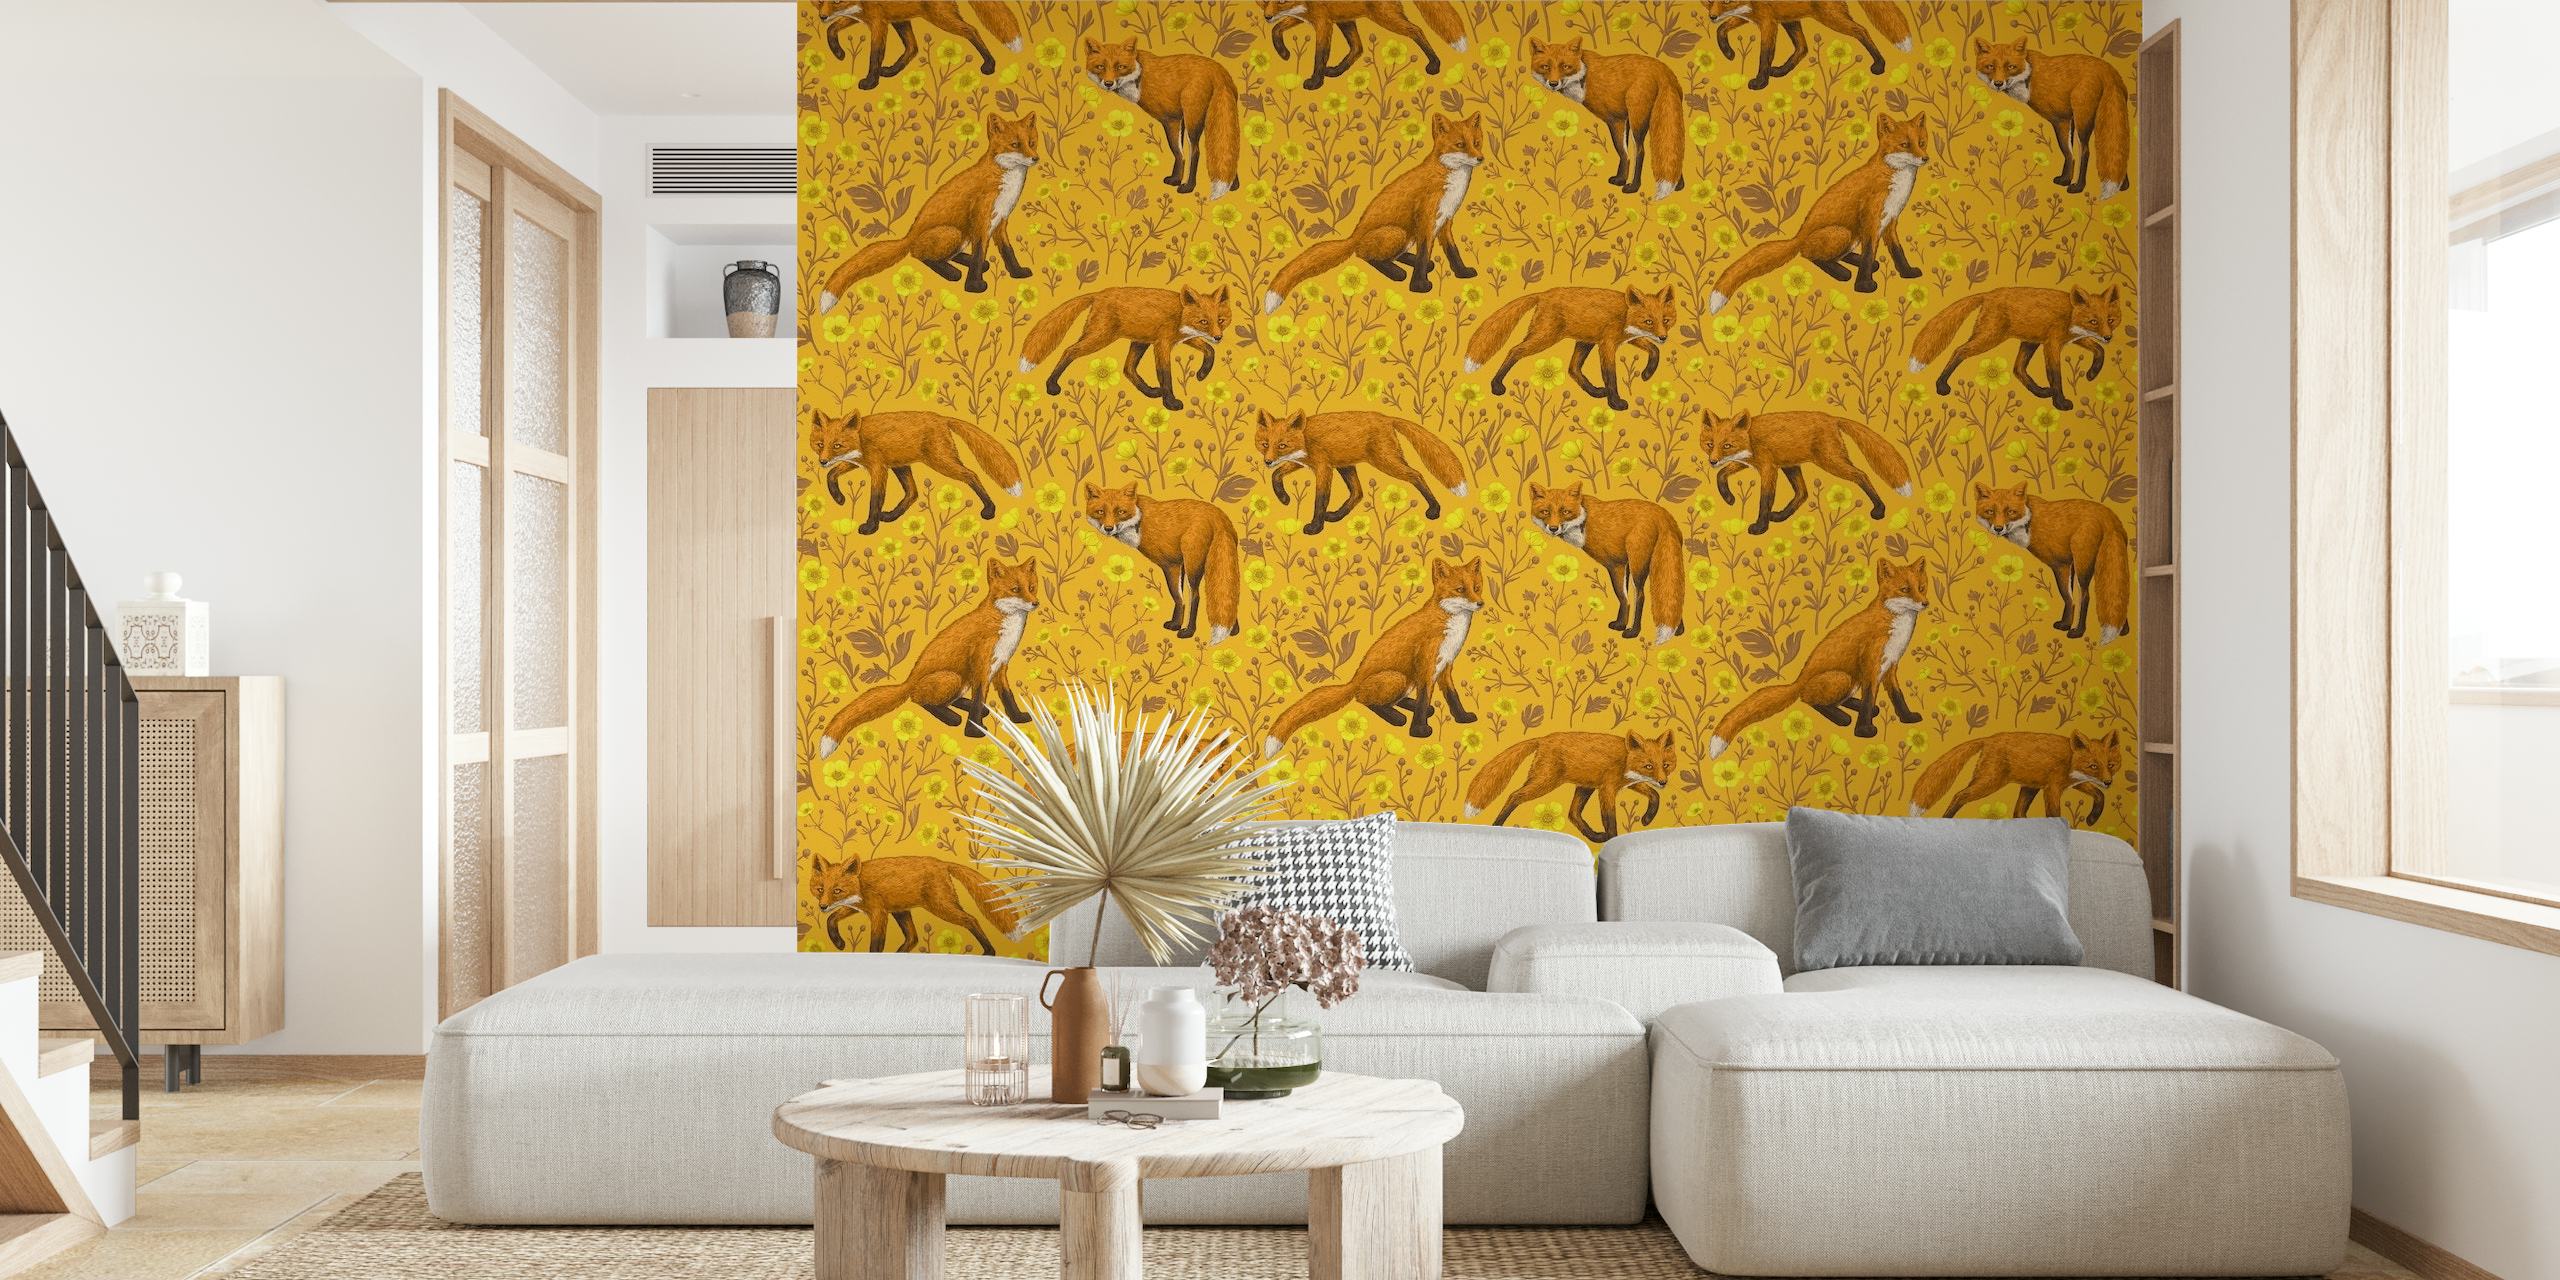 Fotomural vinílico de parede laranja quente com desenho de raposas brincalhonas e flores de botão de ouro